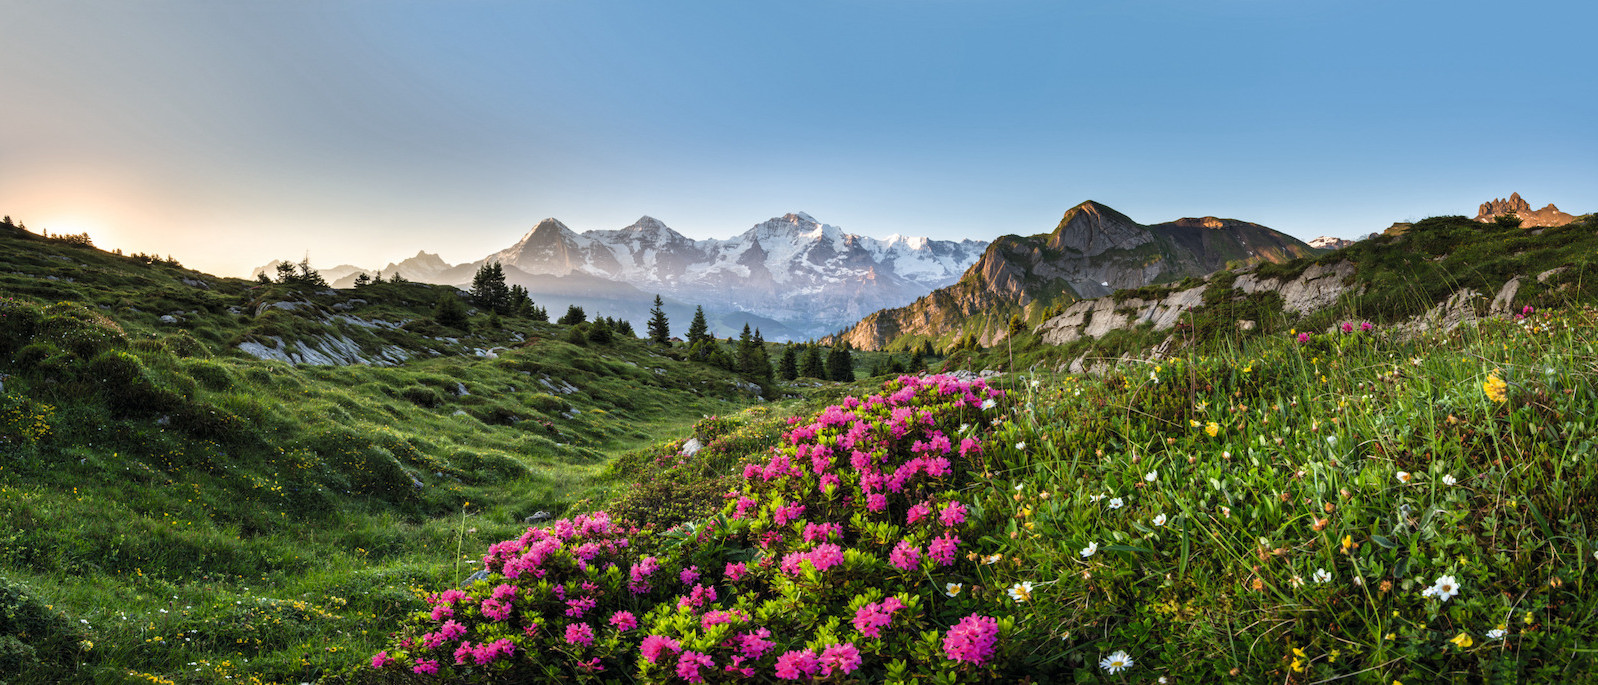 FP Events | Switzerland Tourism/Martin Maegli, Panorama avec des roses alpines sur le Isenfluh pres de Lauterbrunnen, Oberland bernois